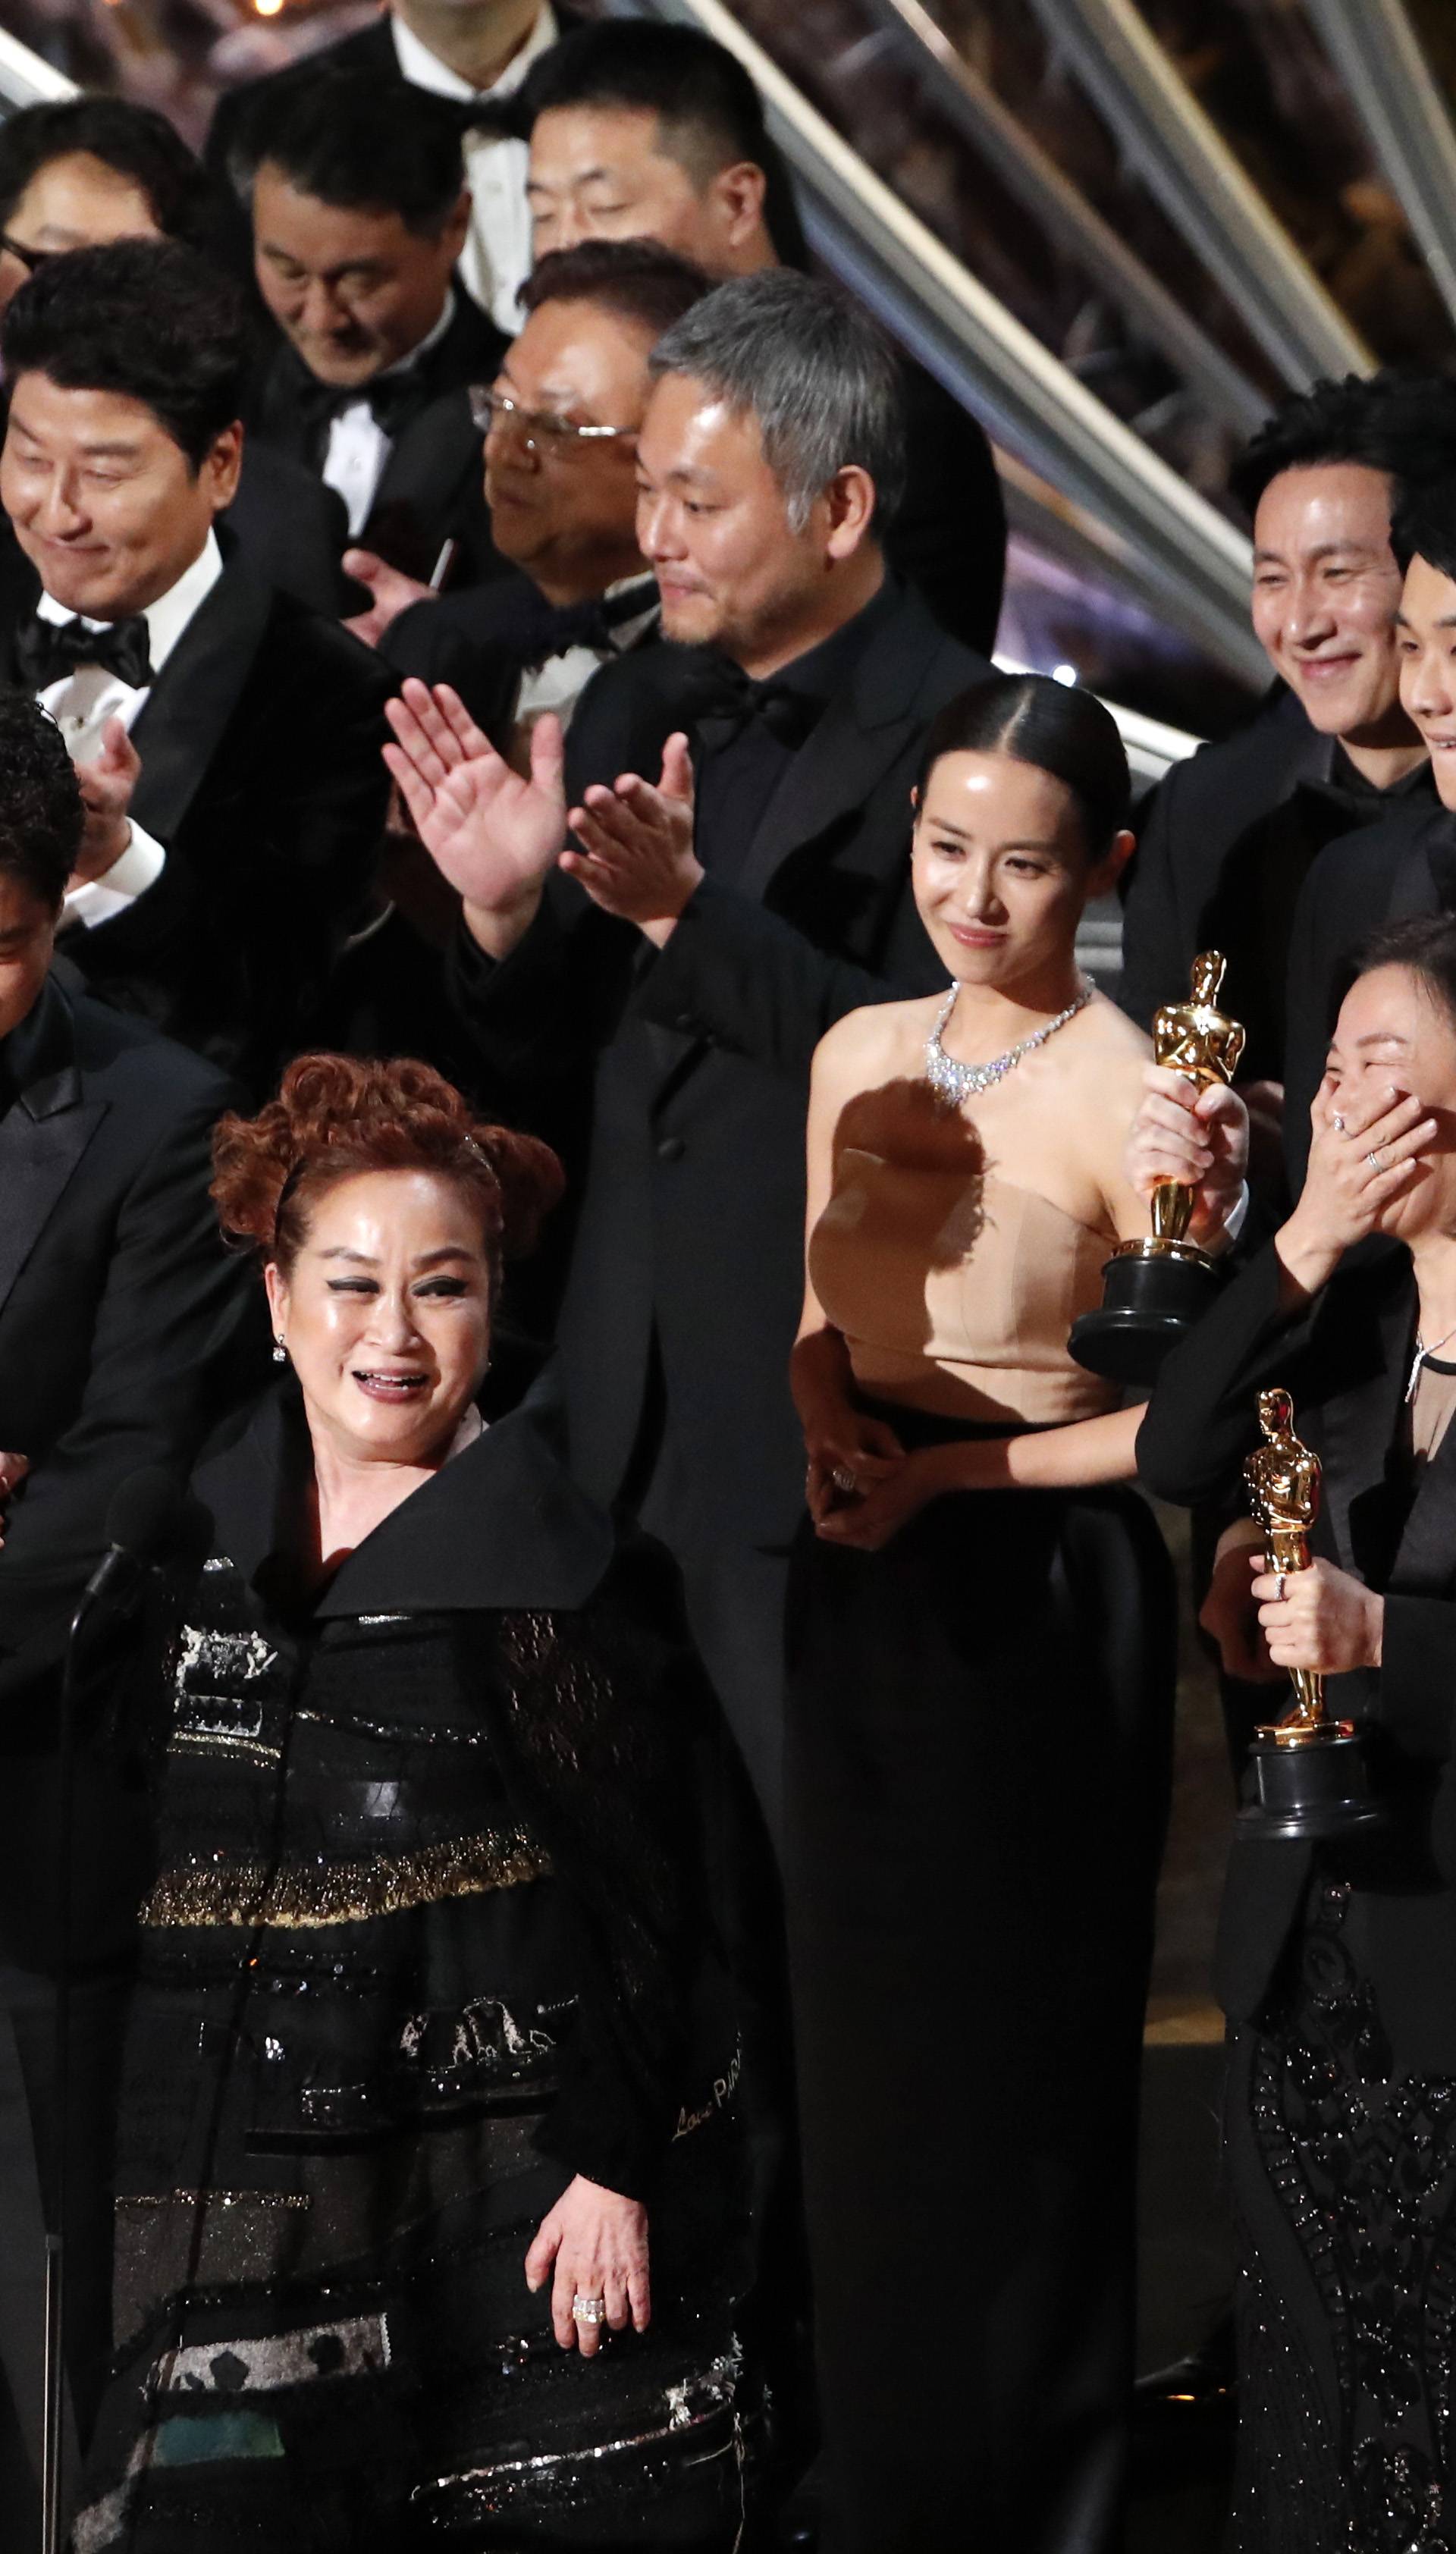 92nd Academy Awards - Oscars Show - Hollywood